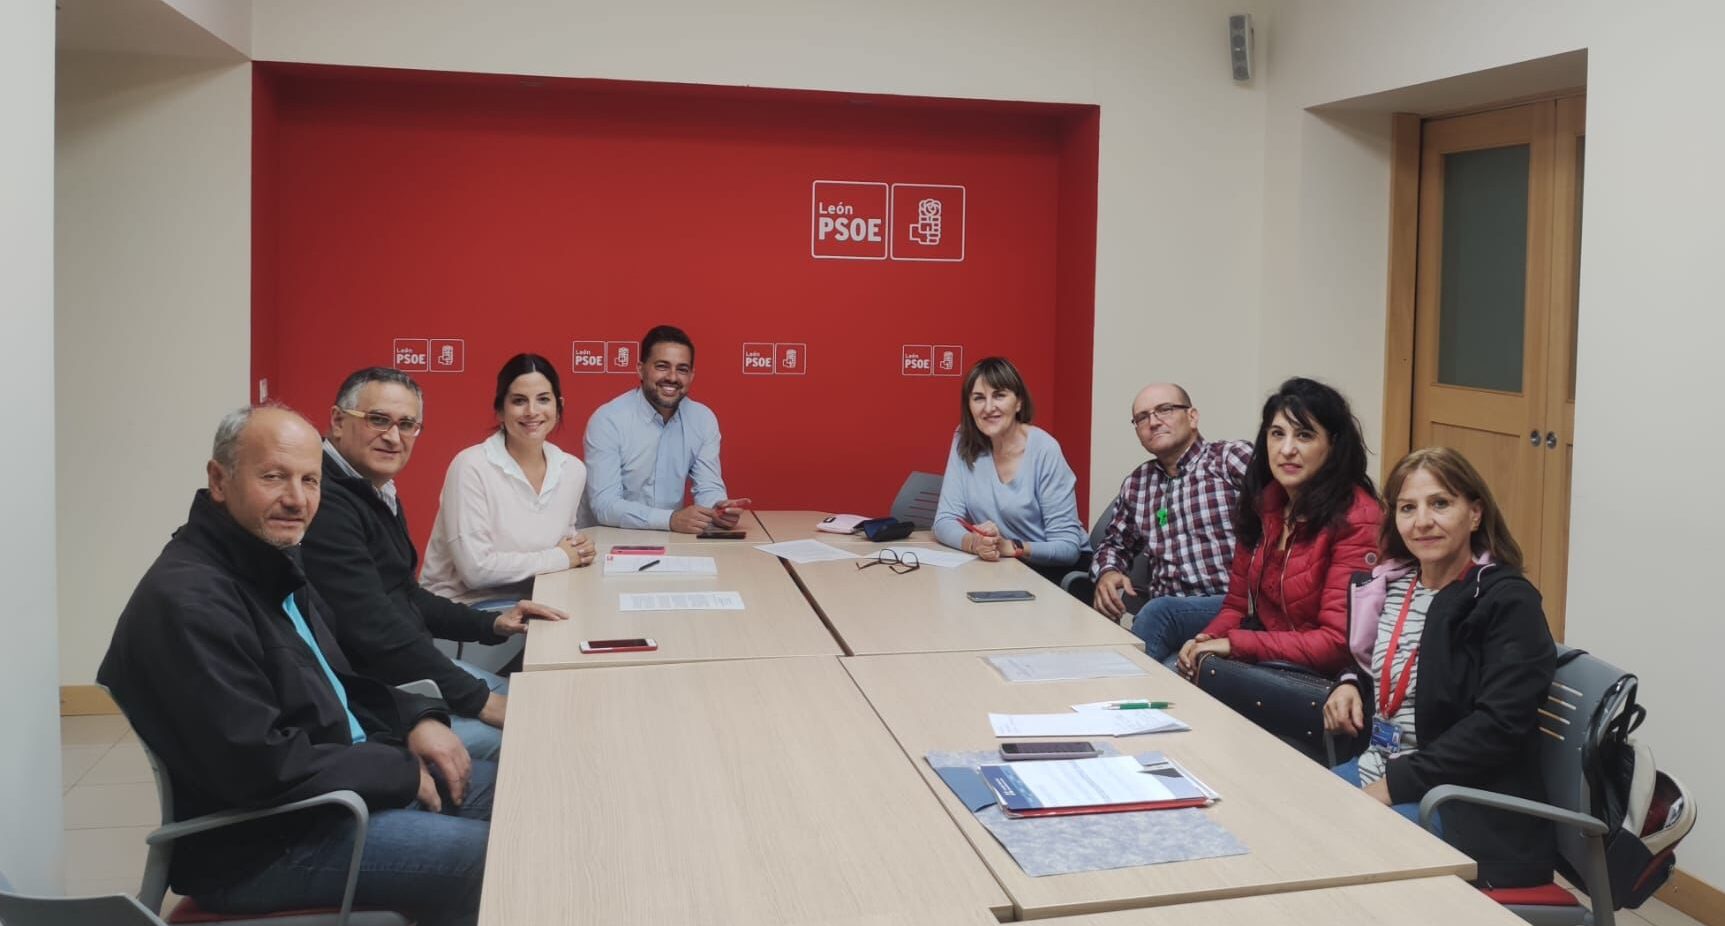 El PSOE de León apoya las reivindicaciones de los profesionales del Sacyl, que exigen un reconocimiento justo y equitativo de todo el personal que trabaja los sábados